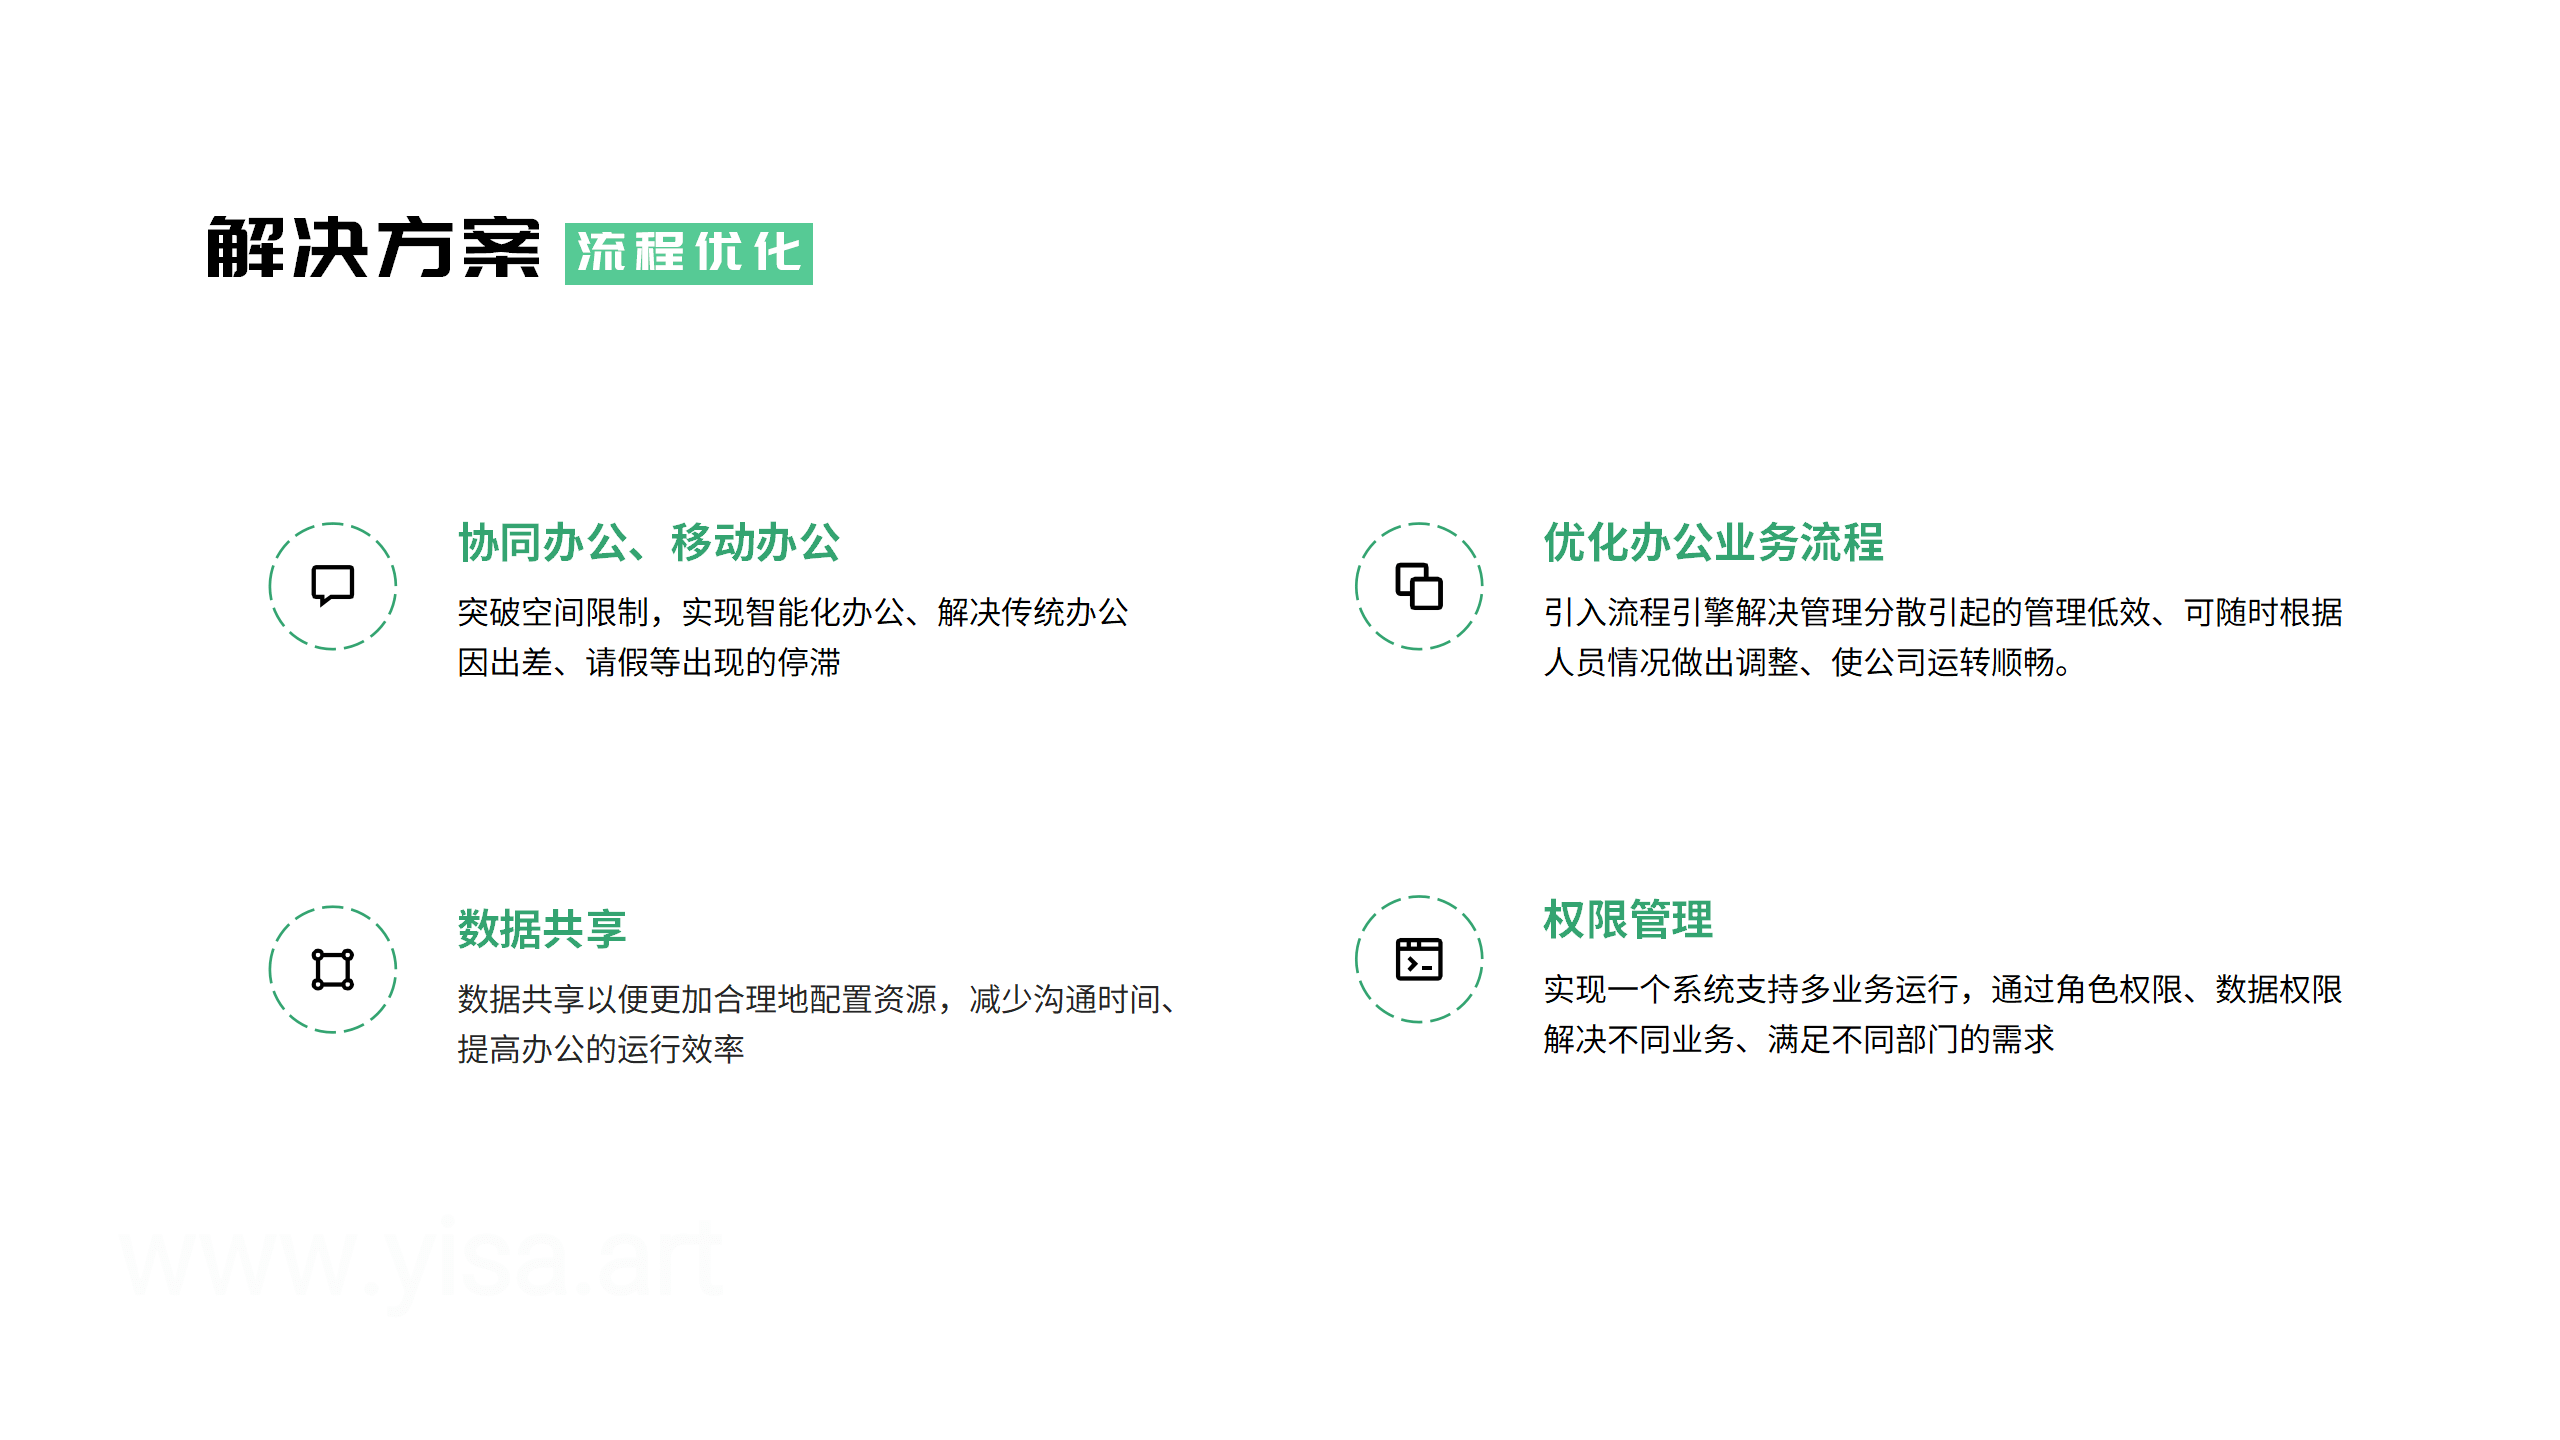 OA自动办公系统 黄伟 V2.3 -20230320_07